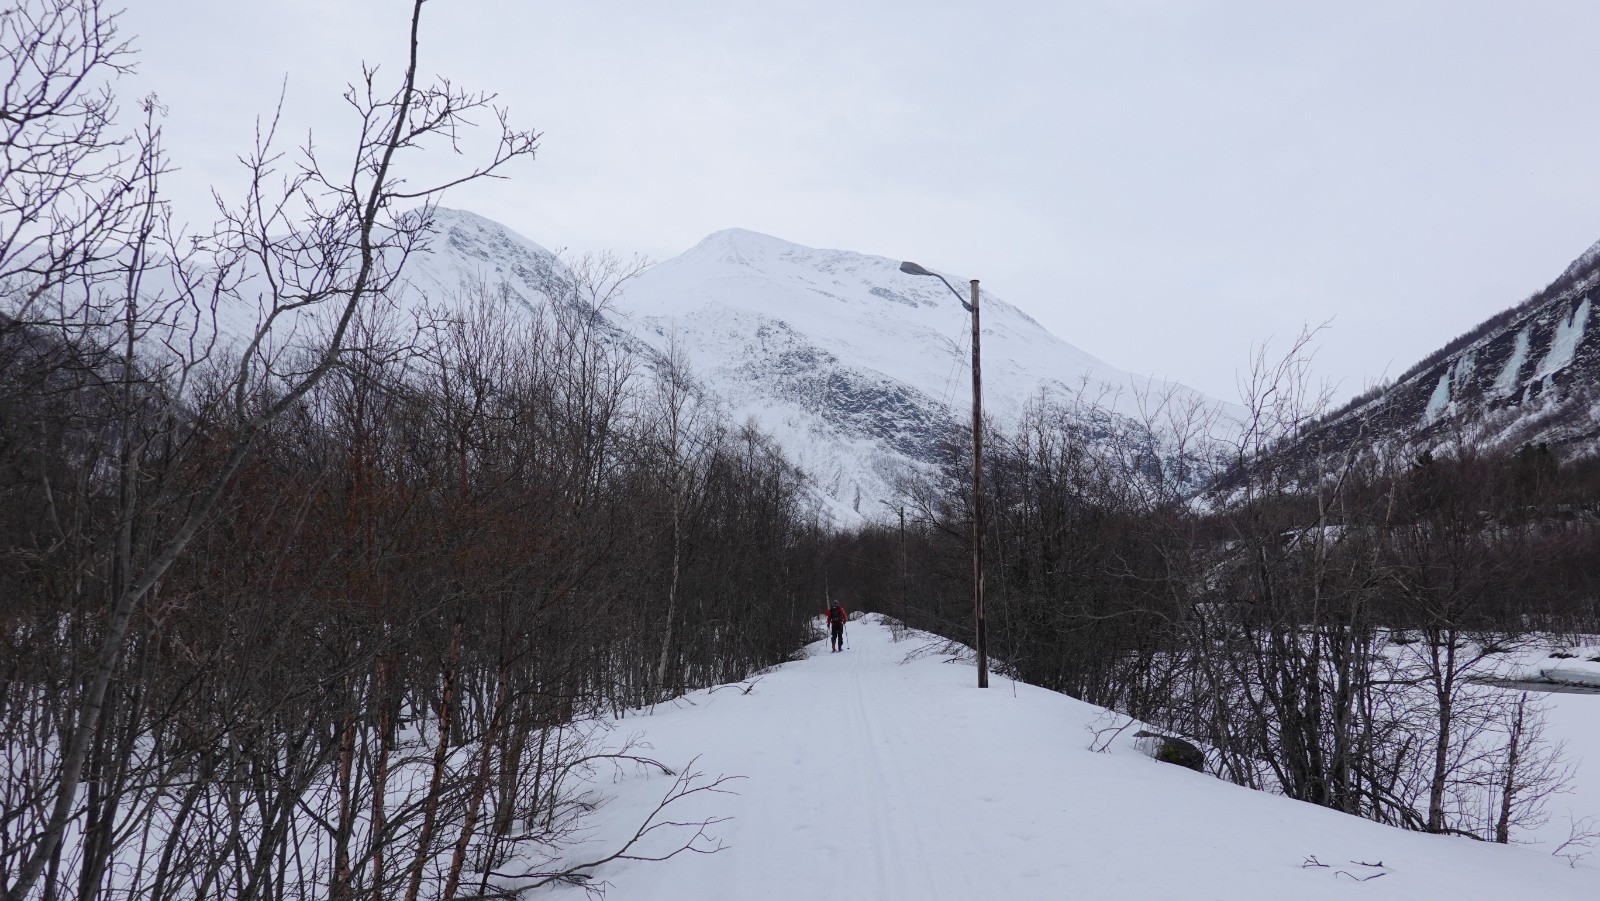 Départ sur les pistes de ski avec le sommet en ligne de mire